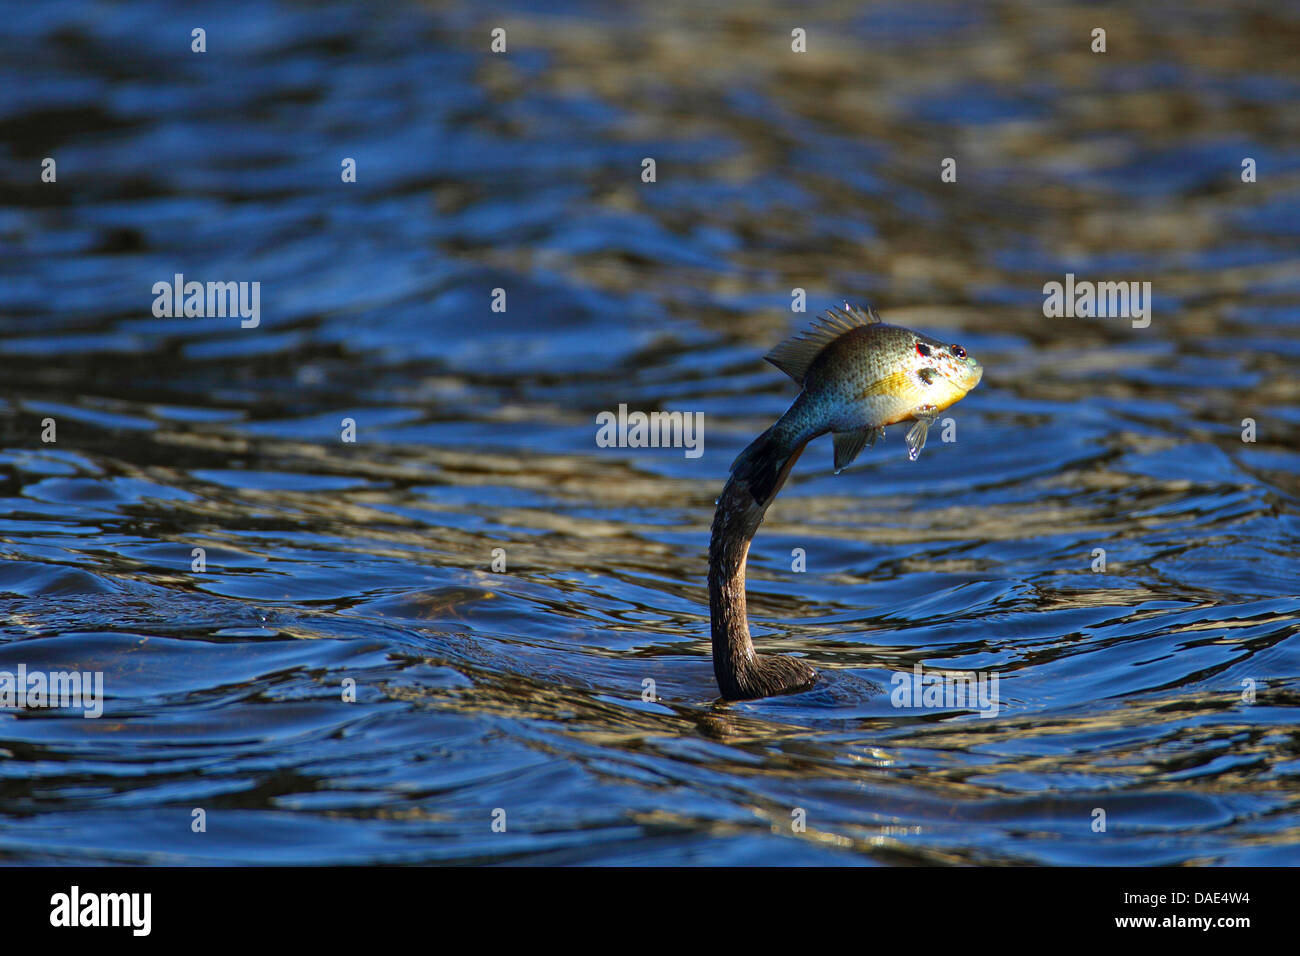 American darter (Anhinga anhinga), swimming, spiking a fish with the bill, USA, Florida Stock Photo